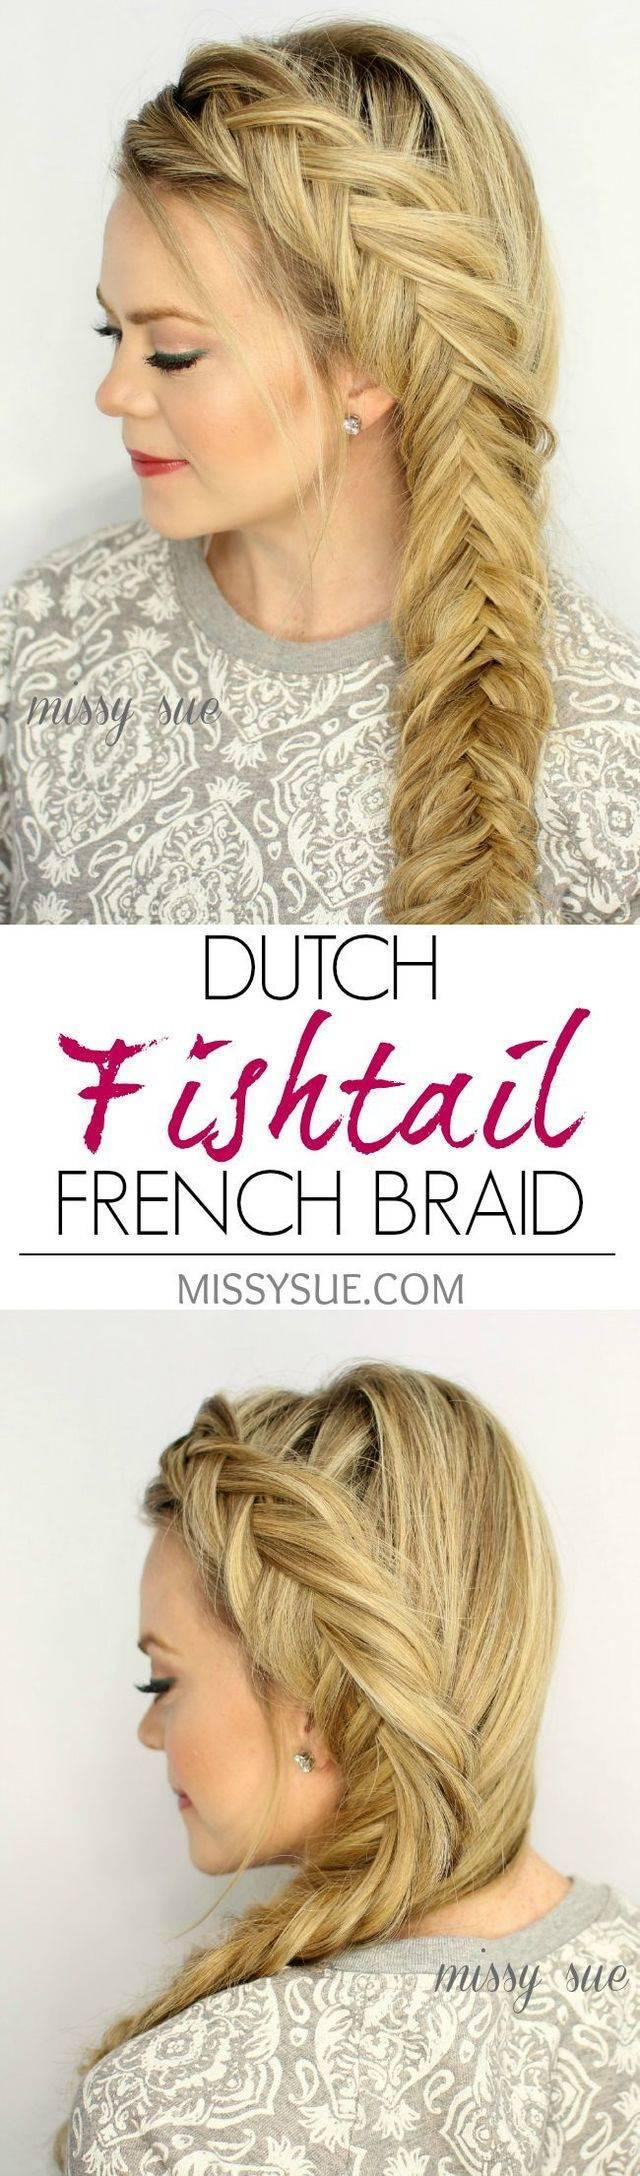 รูปภาพ:http://www.prettydesigns.com/wp-content/uploads/2015/05/Dutch-Fishtail-French-Braid-for-Long-Hair.jpg